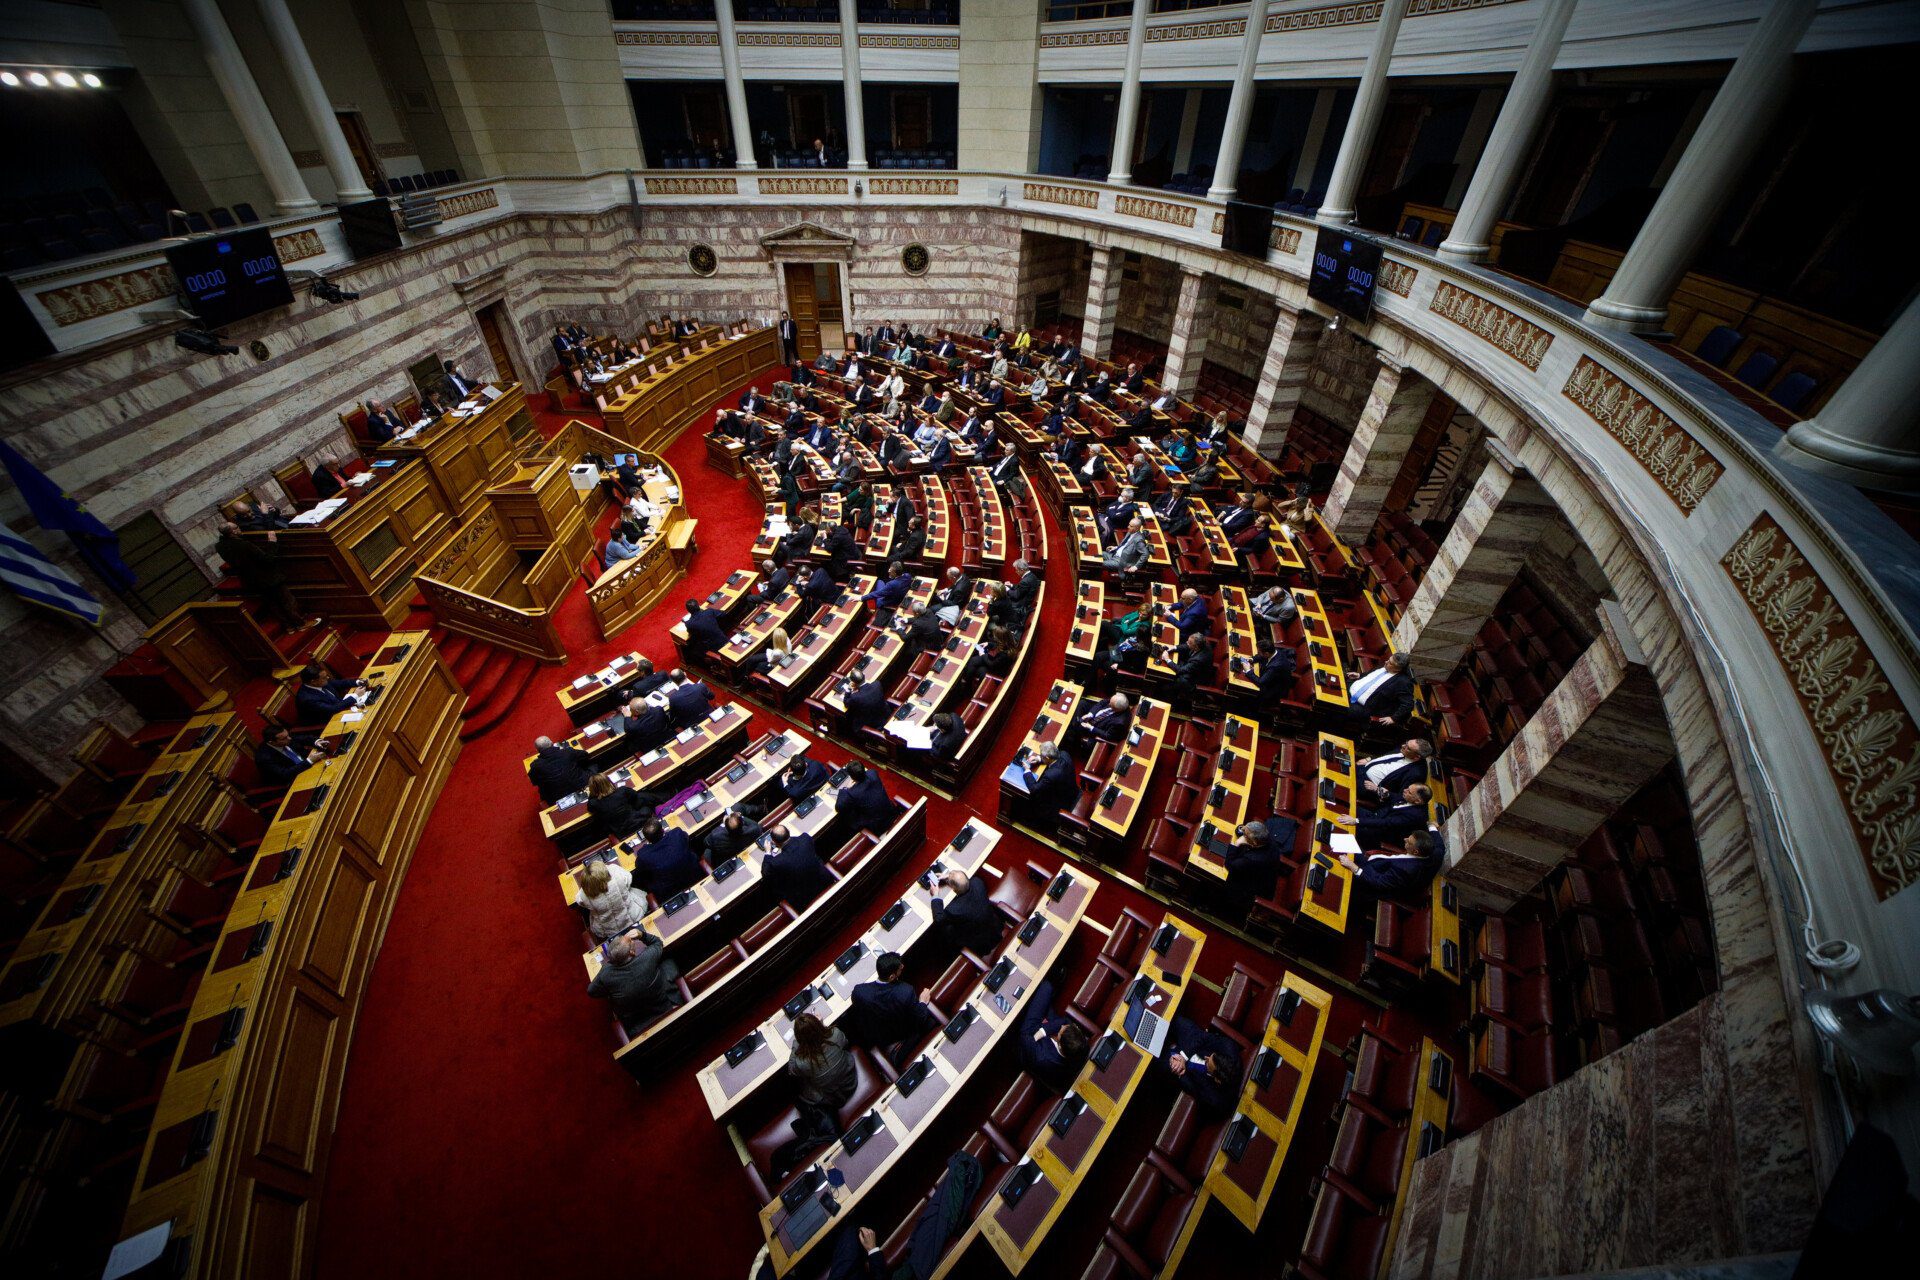 Με διαφωνίες από όλη την αντιπολίτευση και τις ψήφους ΝΔ και ΠΑΣΟΚ περνάει η «τροπολογία Κασιδιάρη» – Χορηγός της ακροδεξιάς η κυβέρνηση λέει ο Τσίπρας